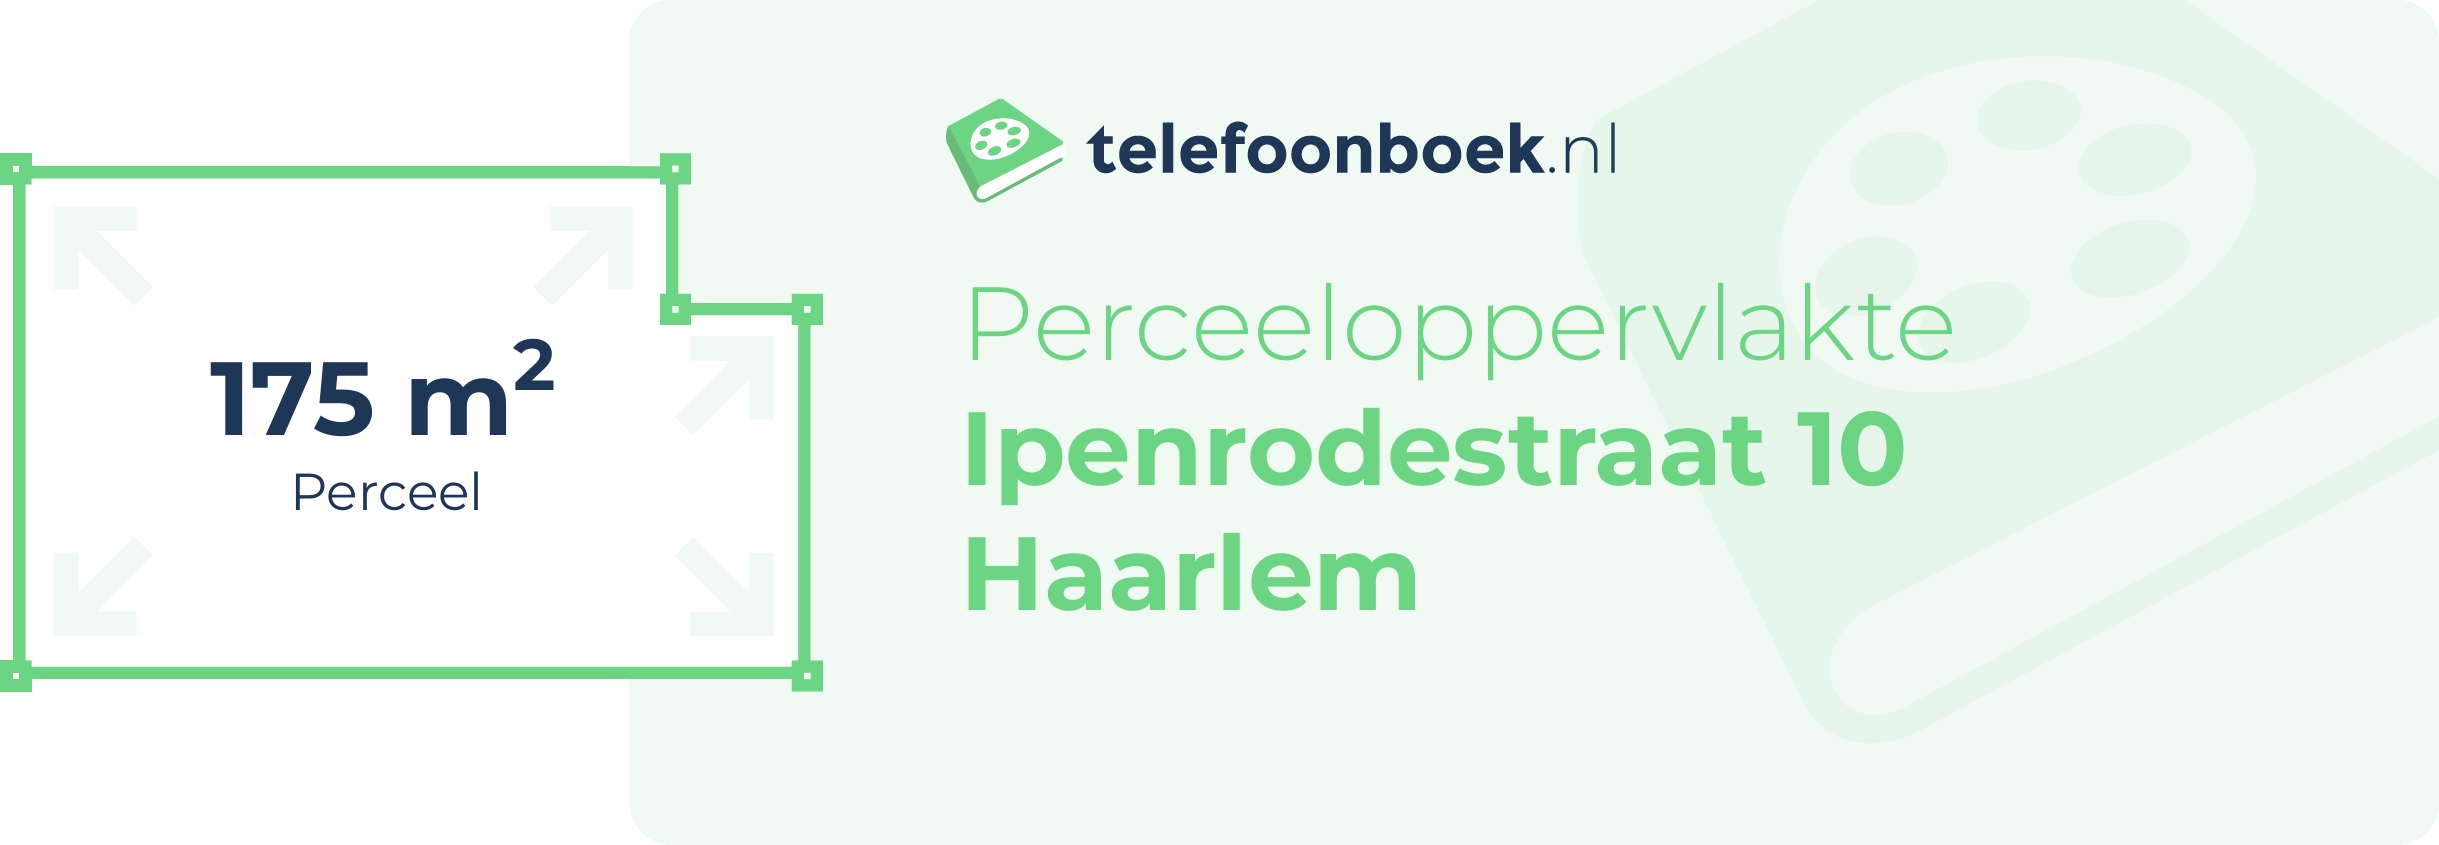 Perceeloppervlakte Ipenrodestraat 10 Haarlem